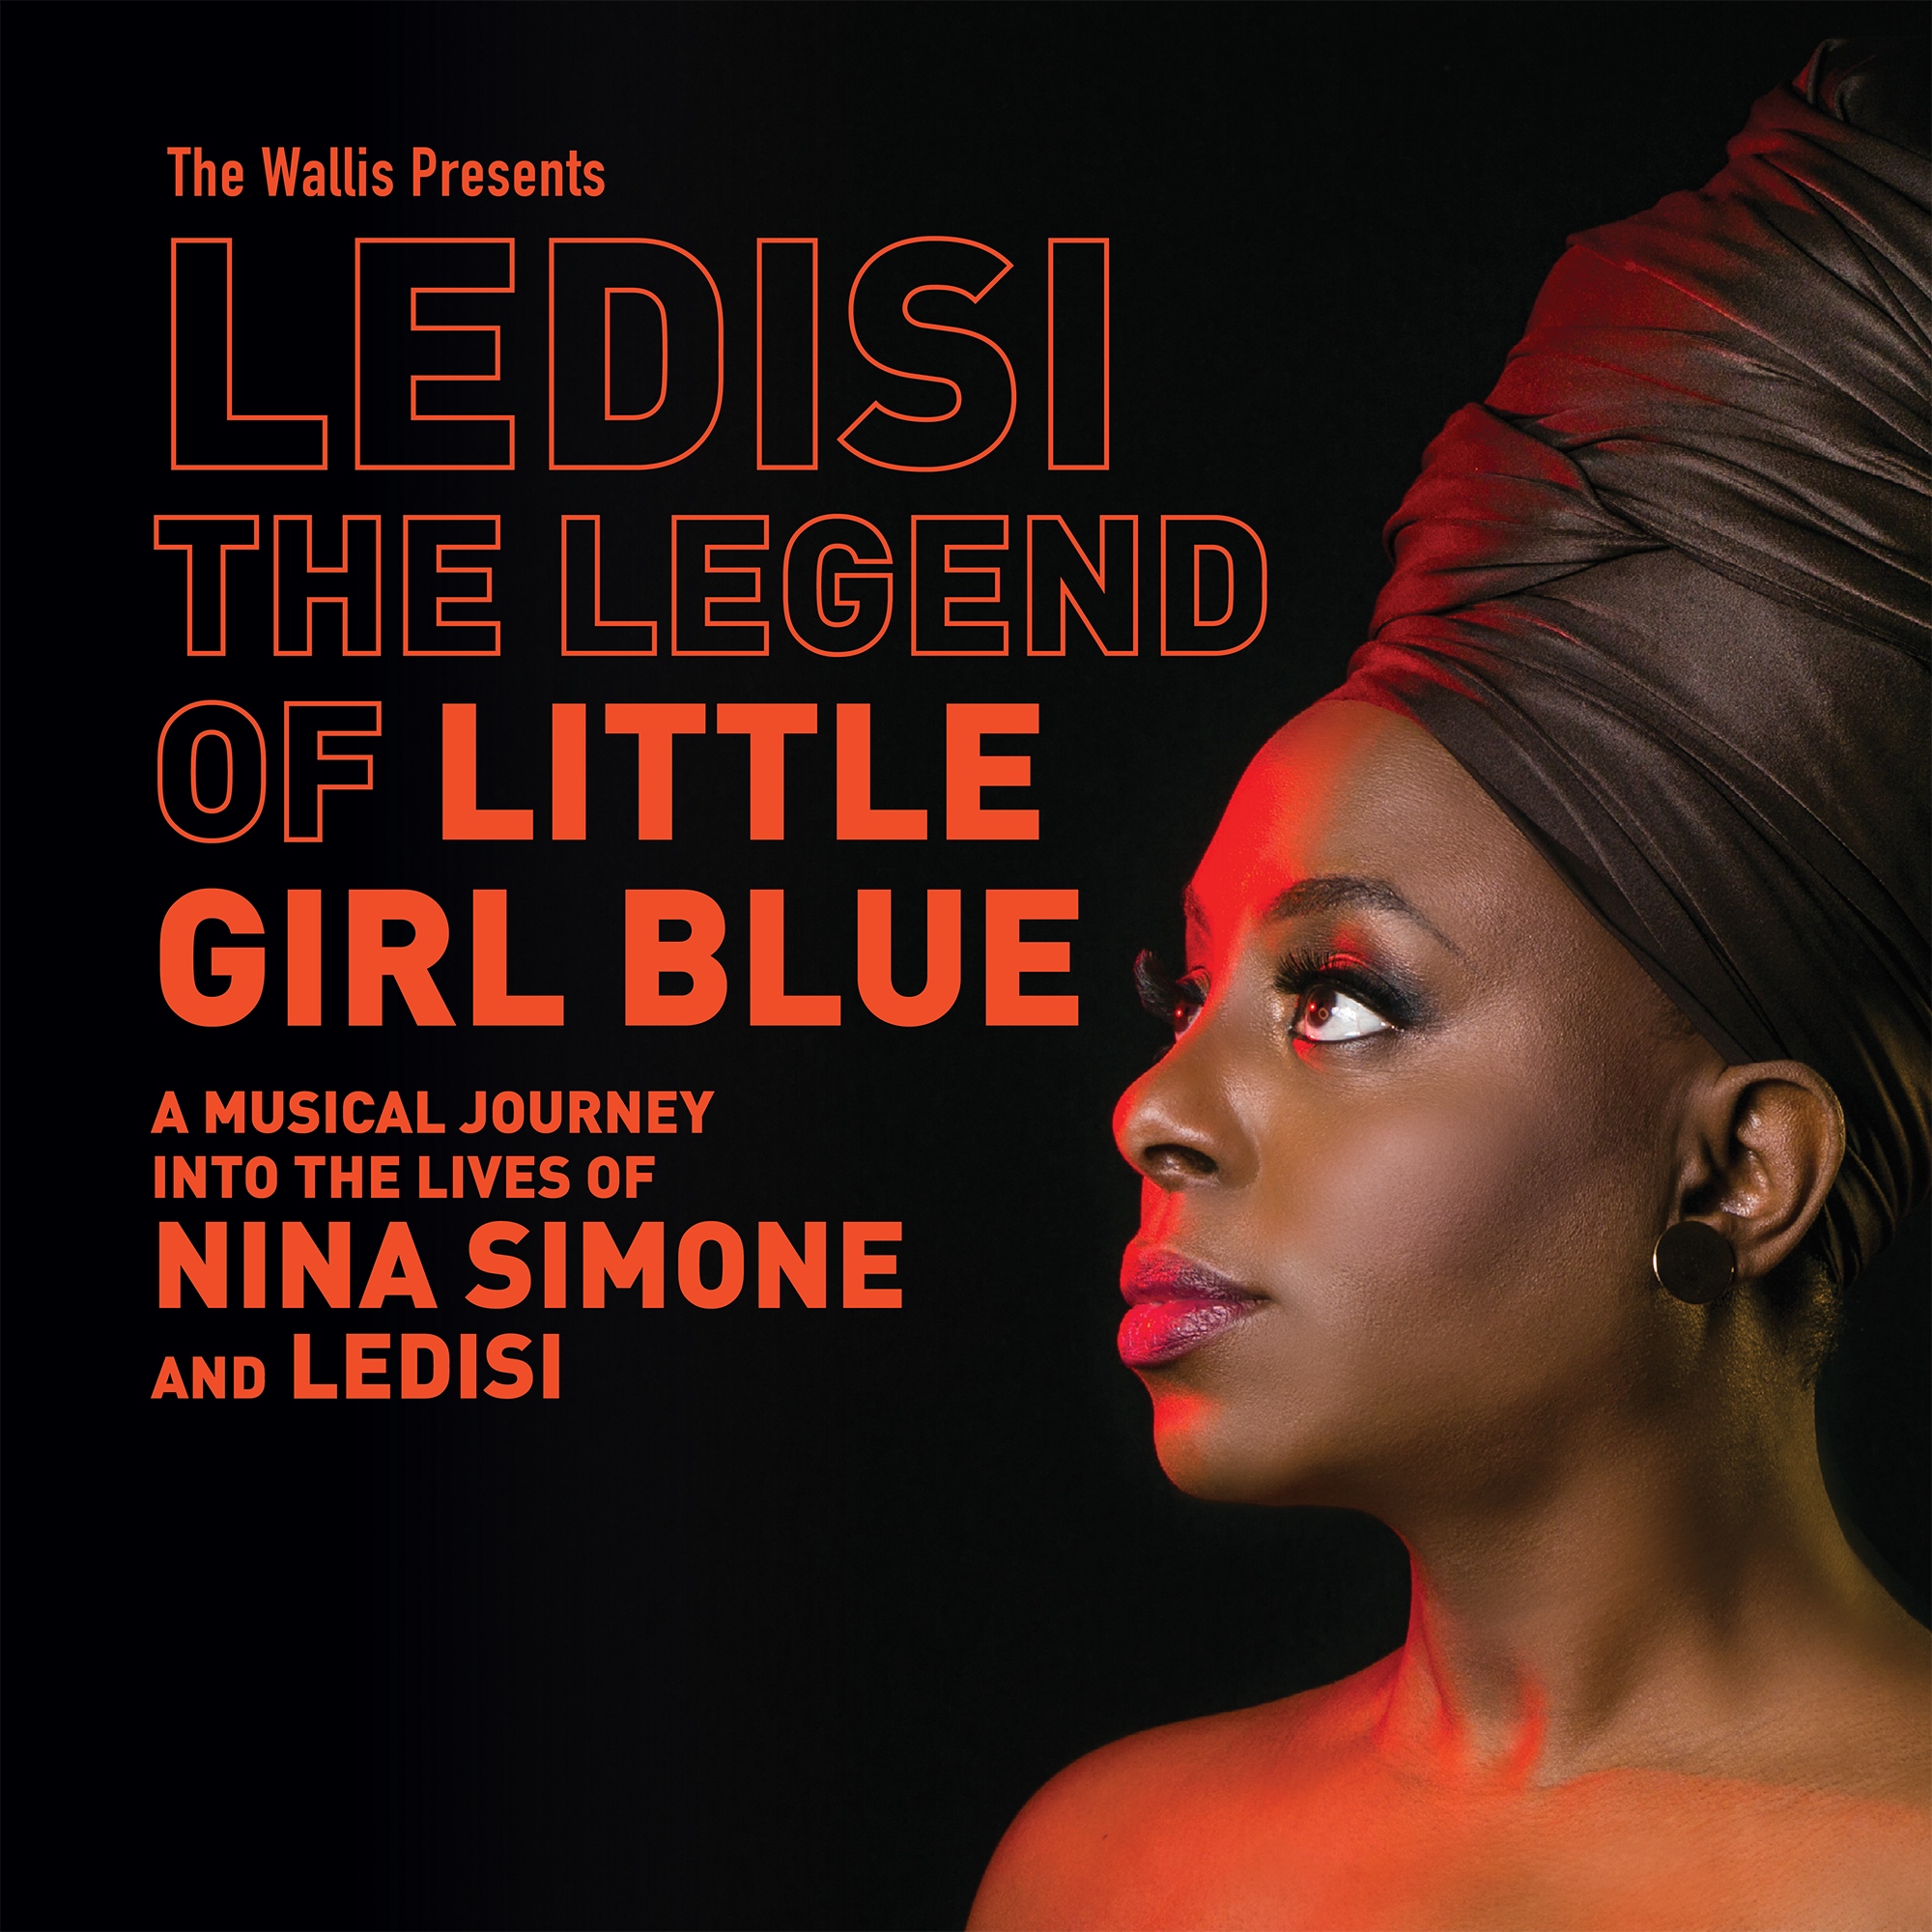 LEDISI: The Legend of Little Girl Blue